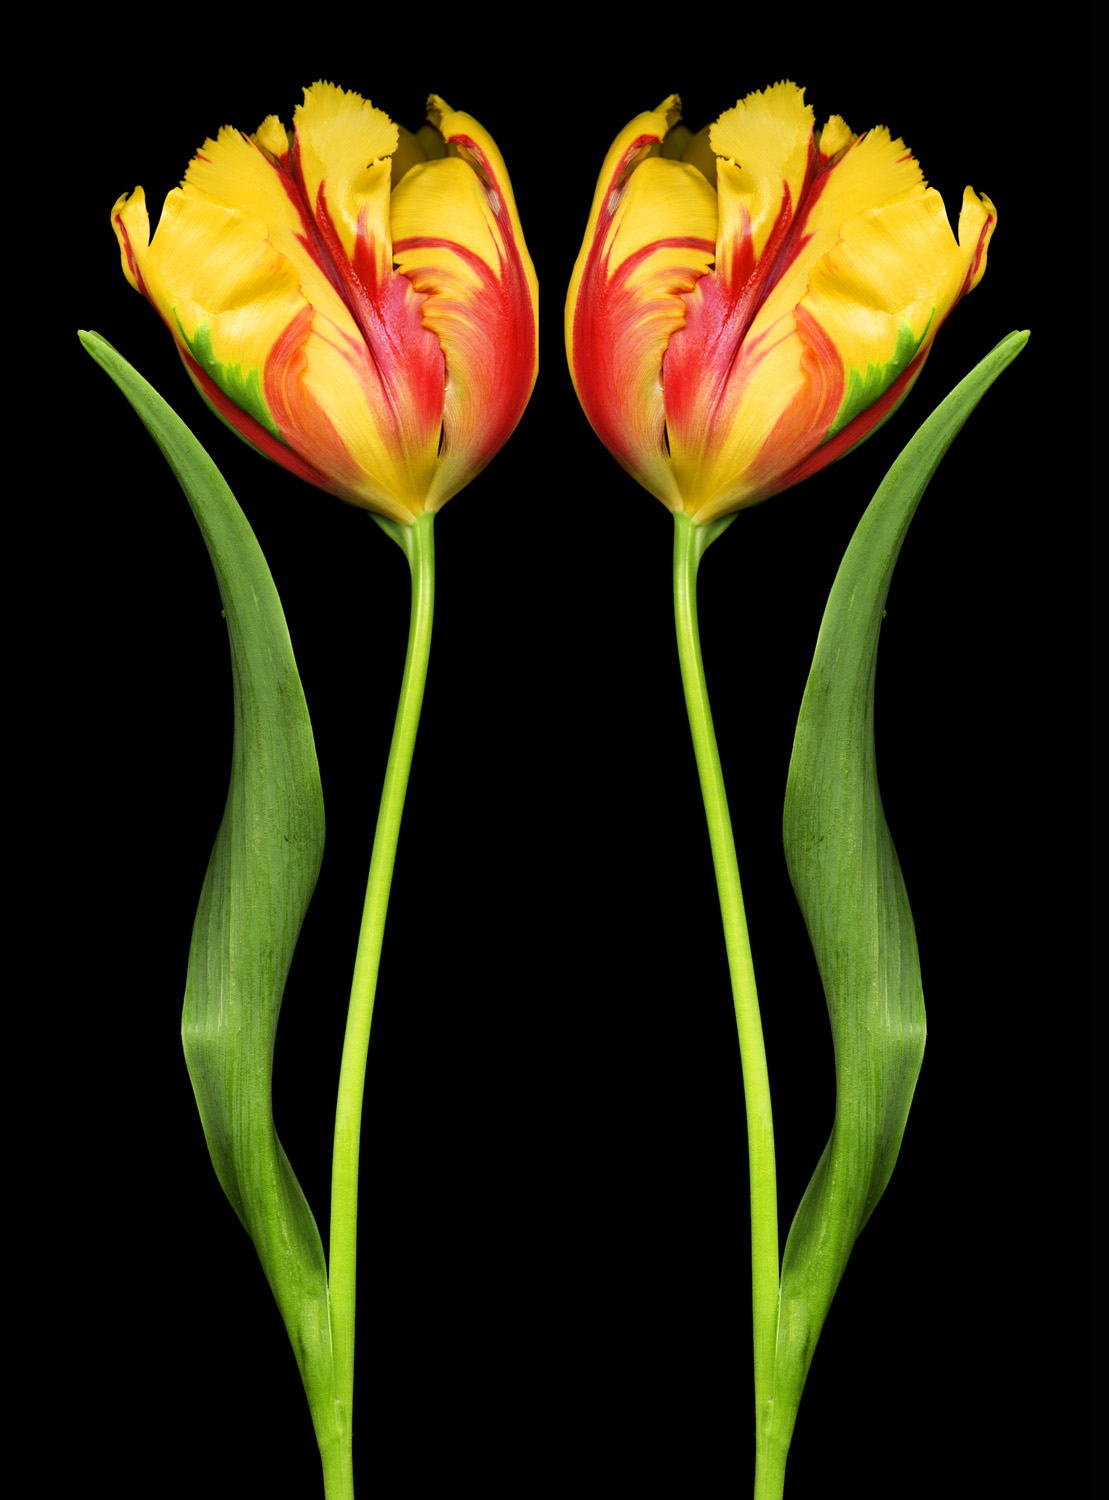 Mirrored Tulips